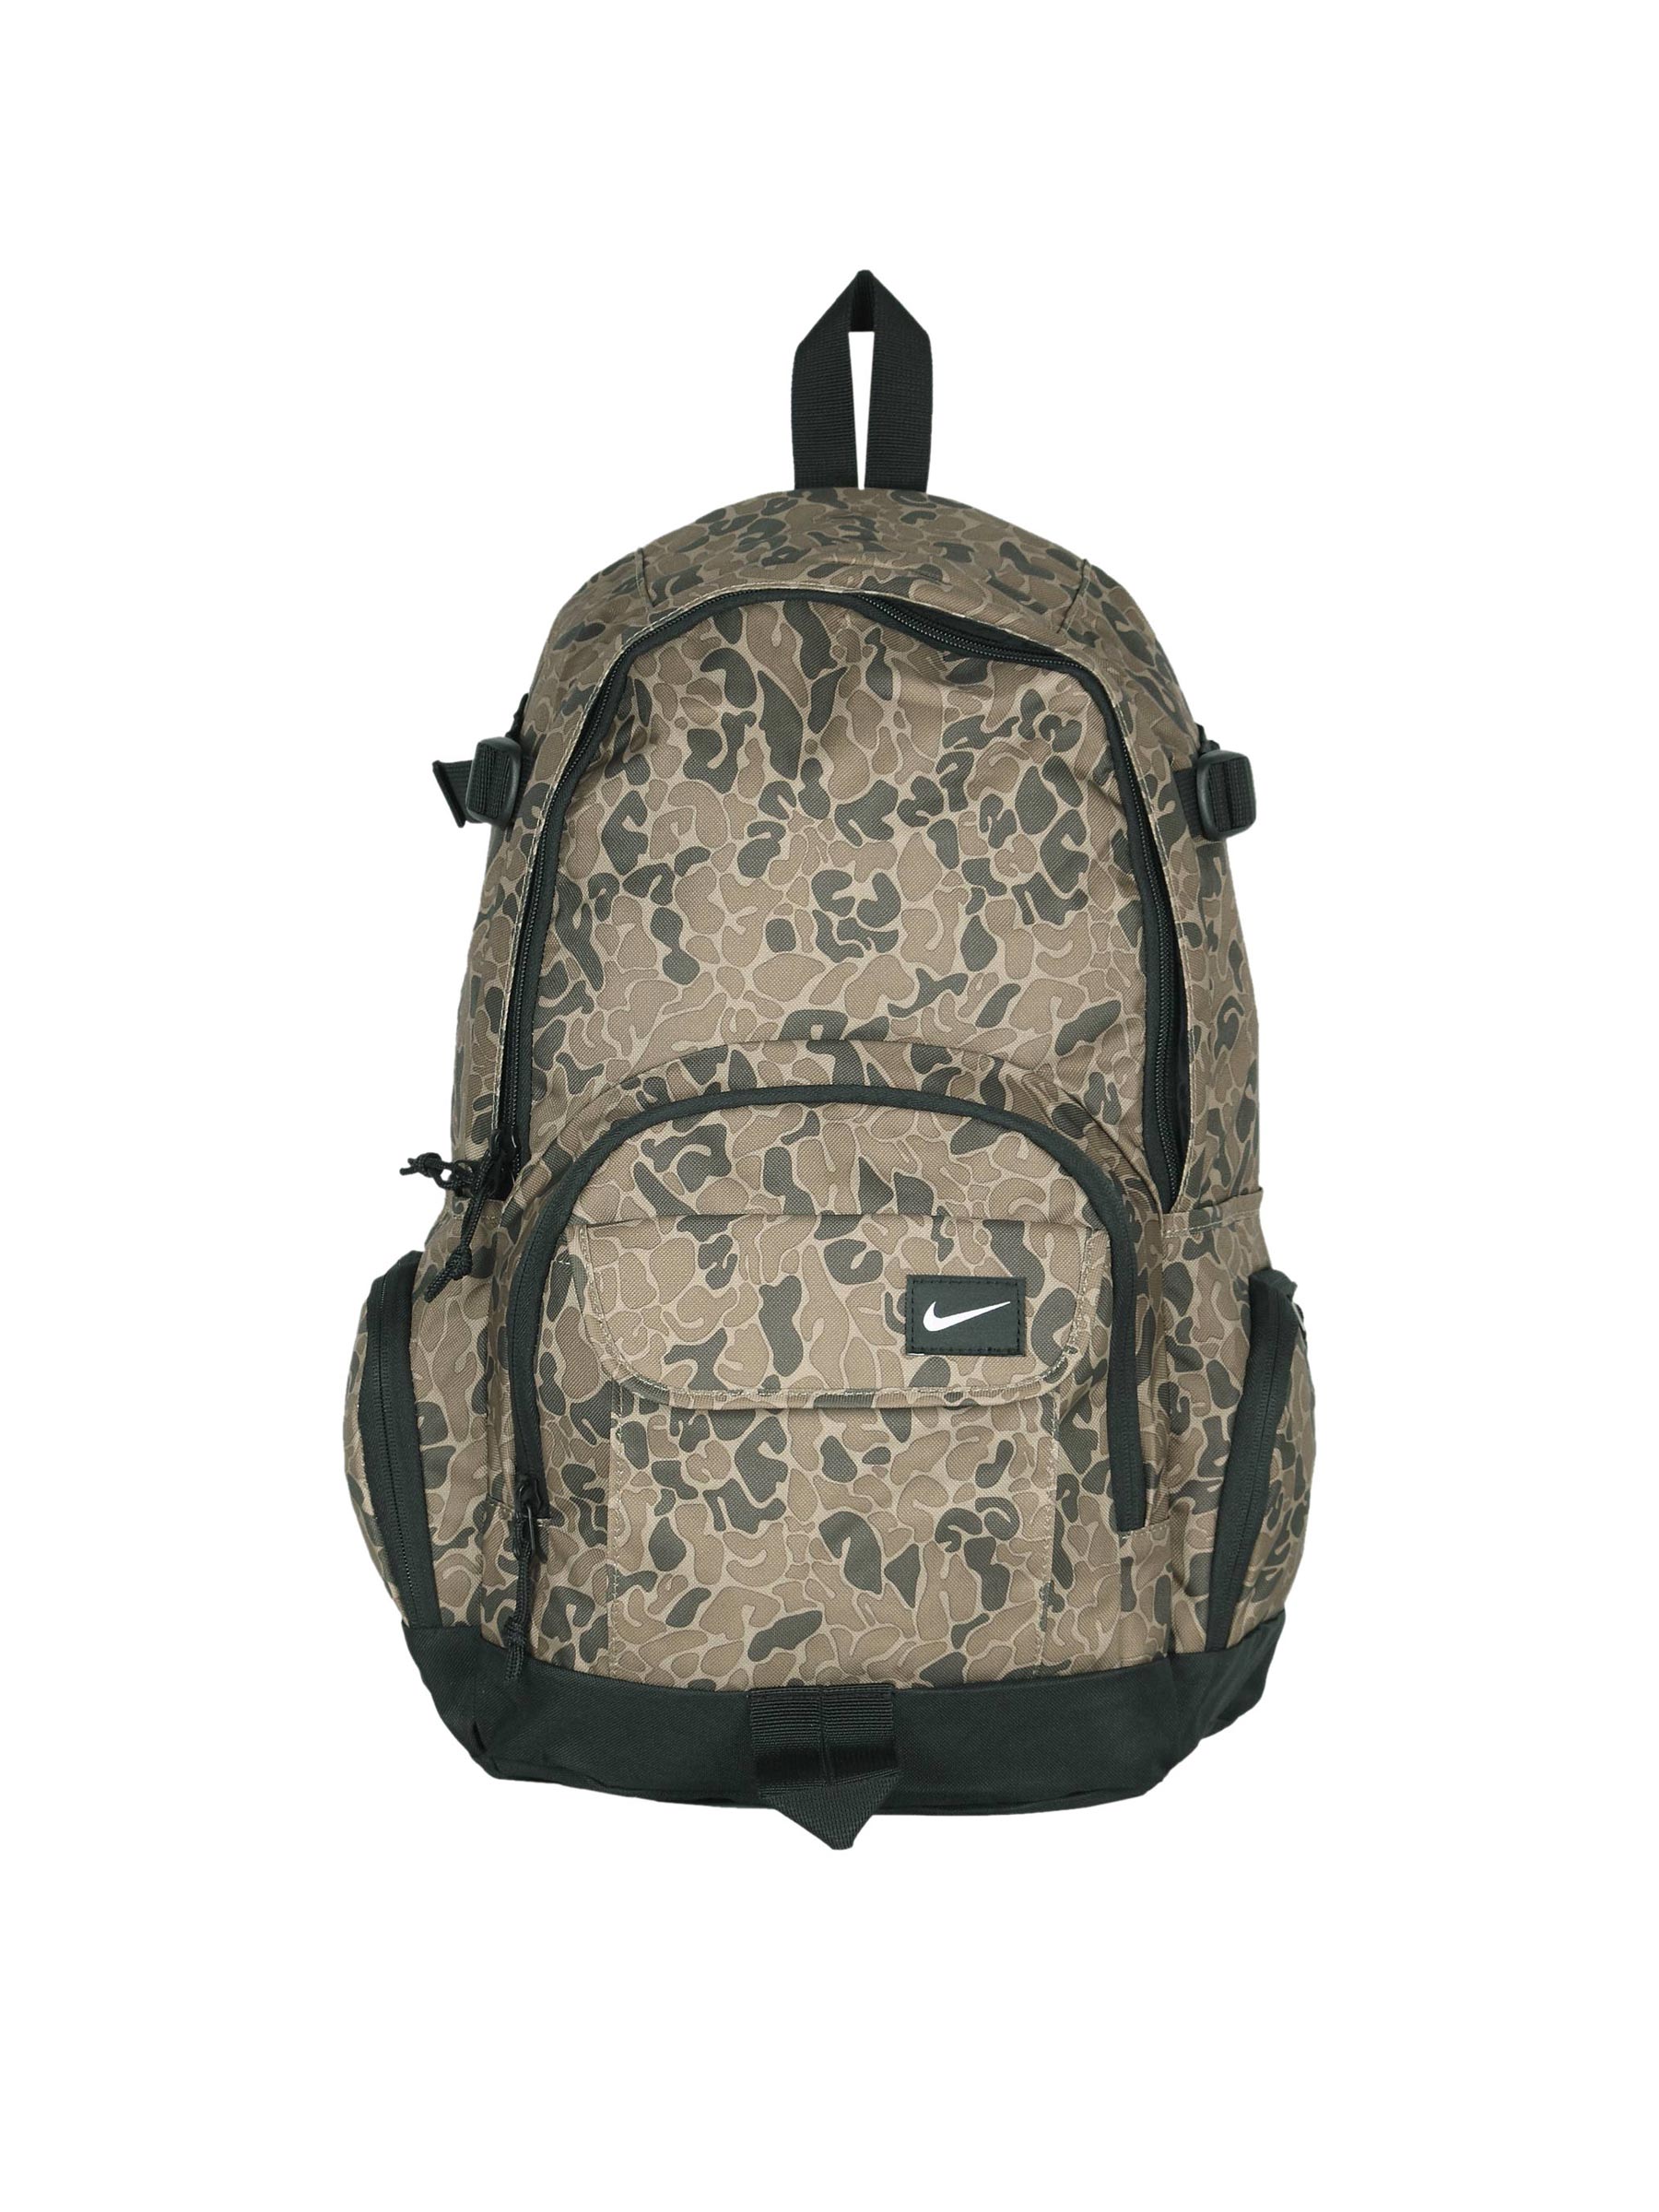 Nike Unisex Access FU Green Backpack